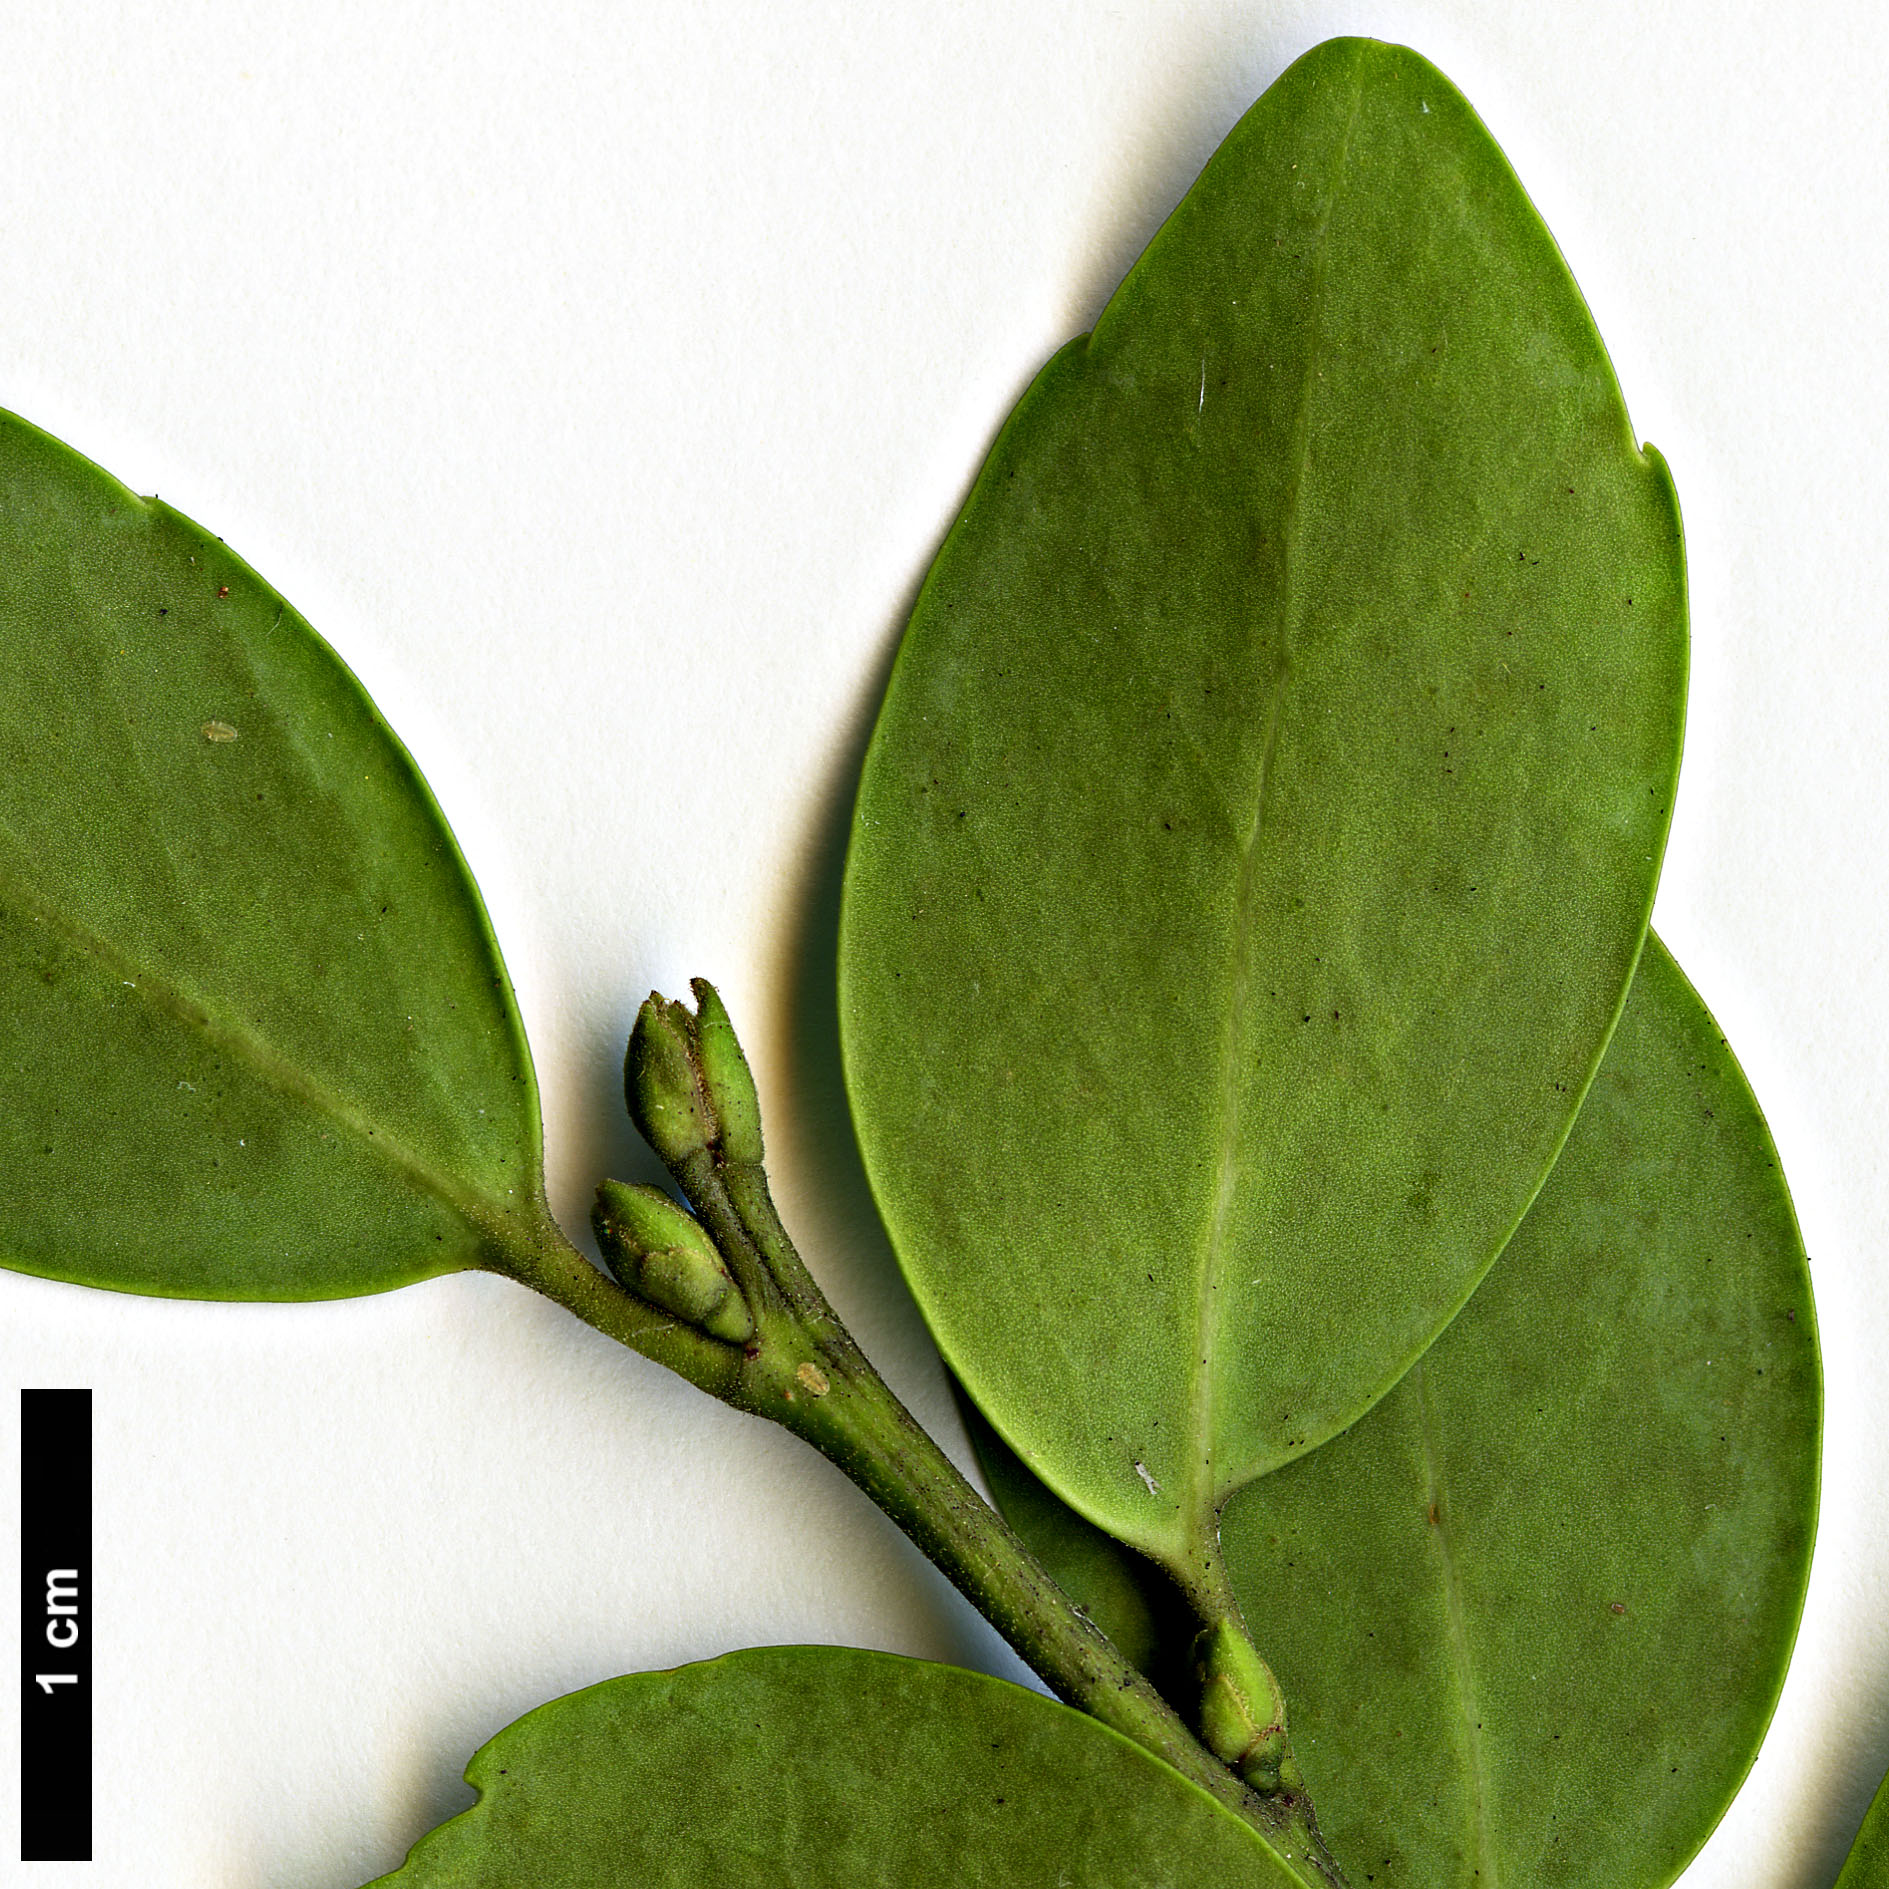 High resolution image: Family: Aquifoliaceae - Genus: Ilex - Taxon: sugerokii